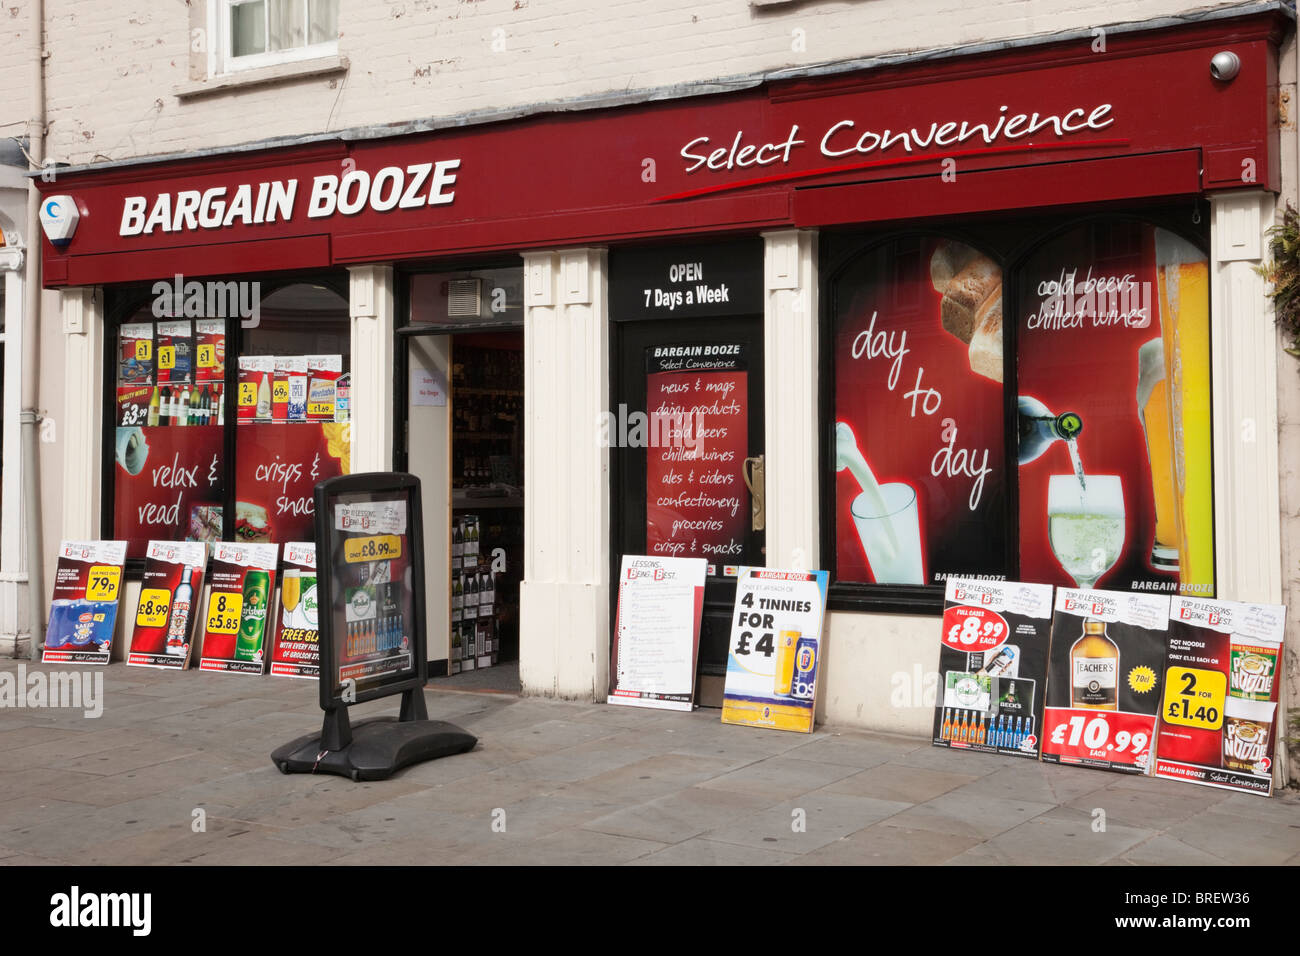 Bargain Booze shop/fenêtre avec des publicités pour l'alcool bon marché. Pays de Galles, Royaume-Uni, Angleterre Banque D'Images